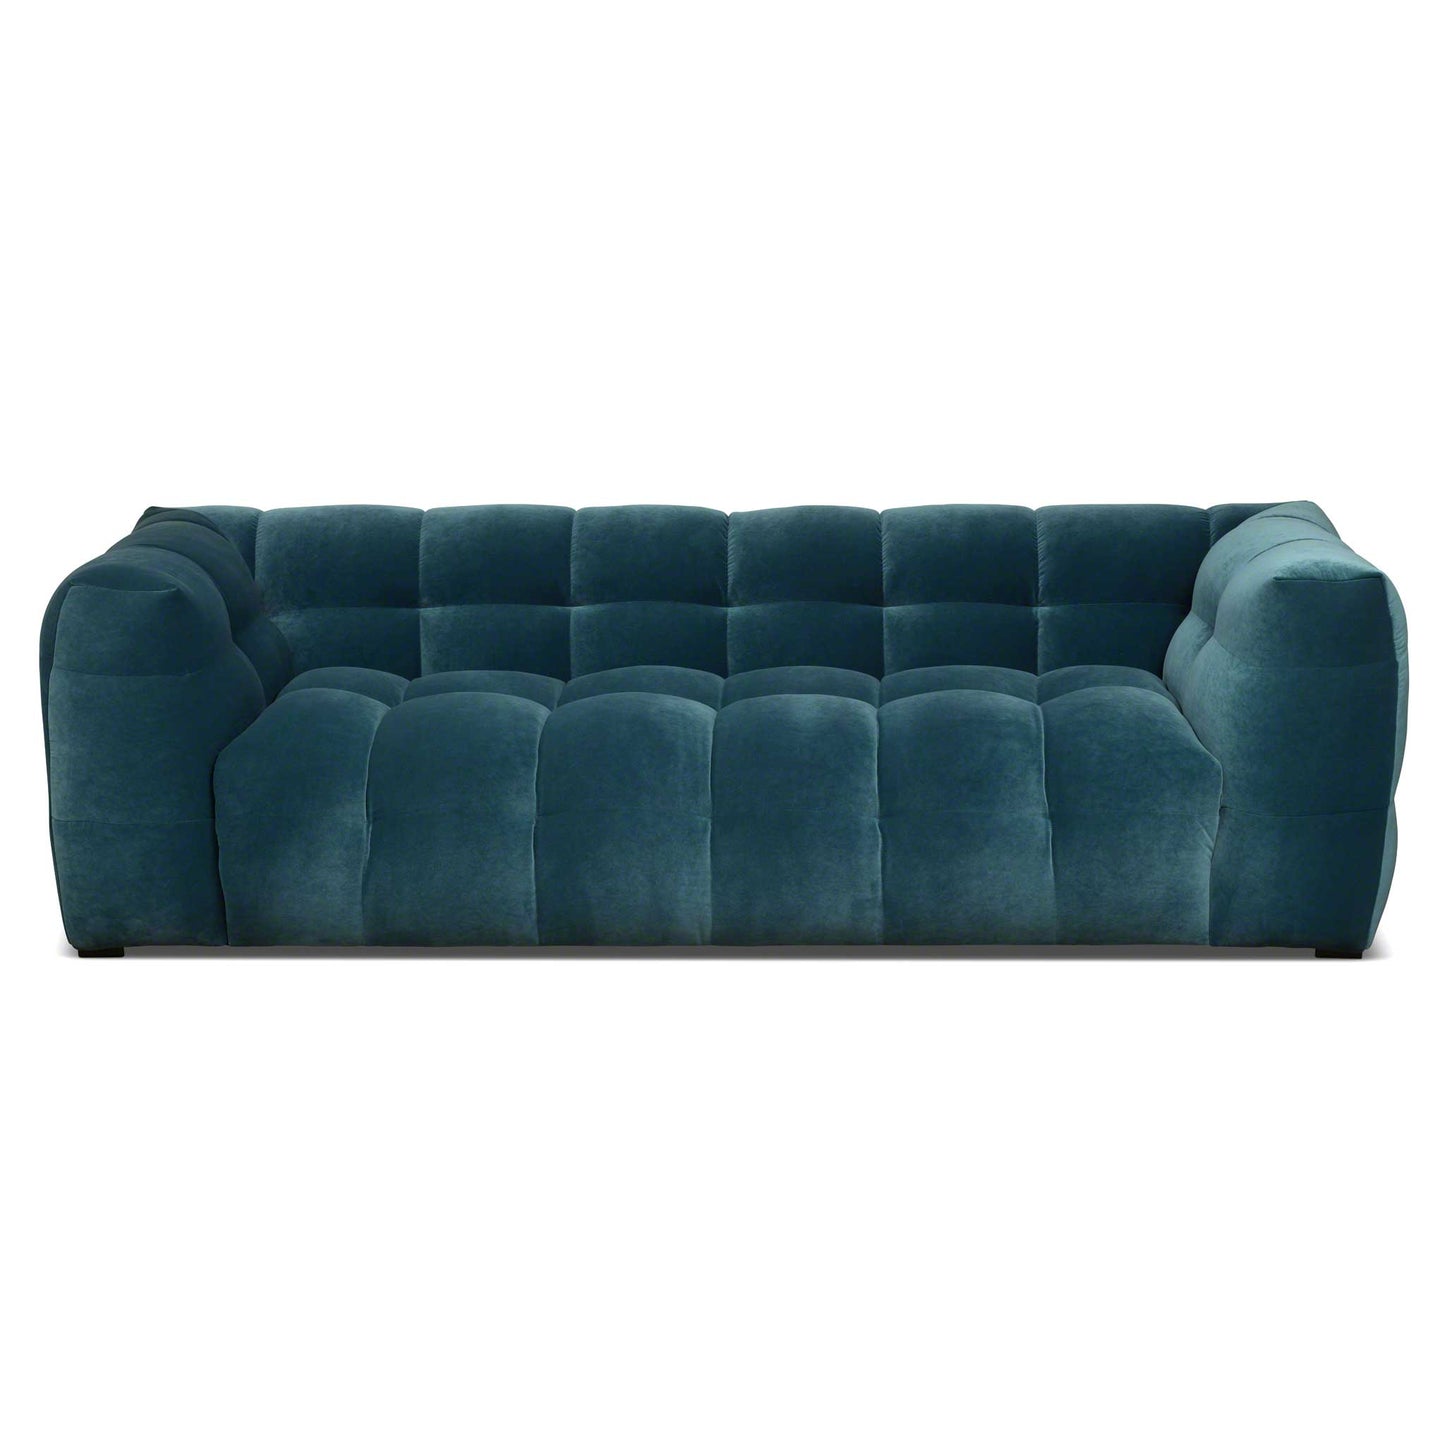 3-sits design sammets soffa i petroleumblå sammet. Bubbligt, danskt formspråk.